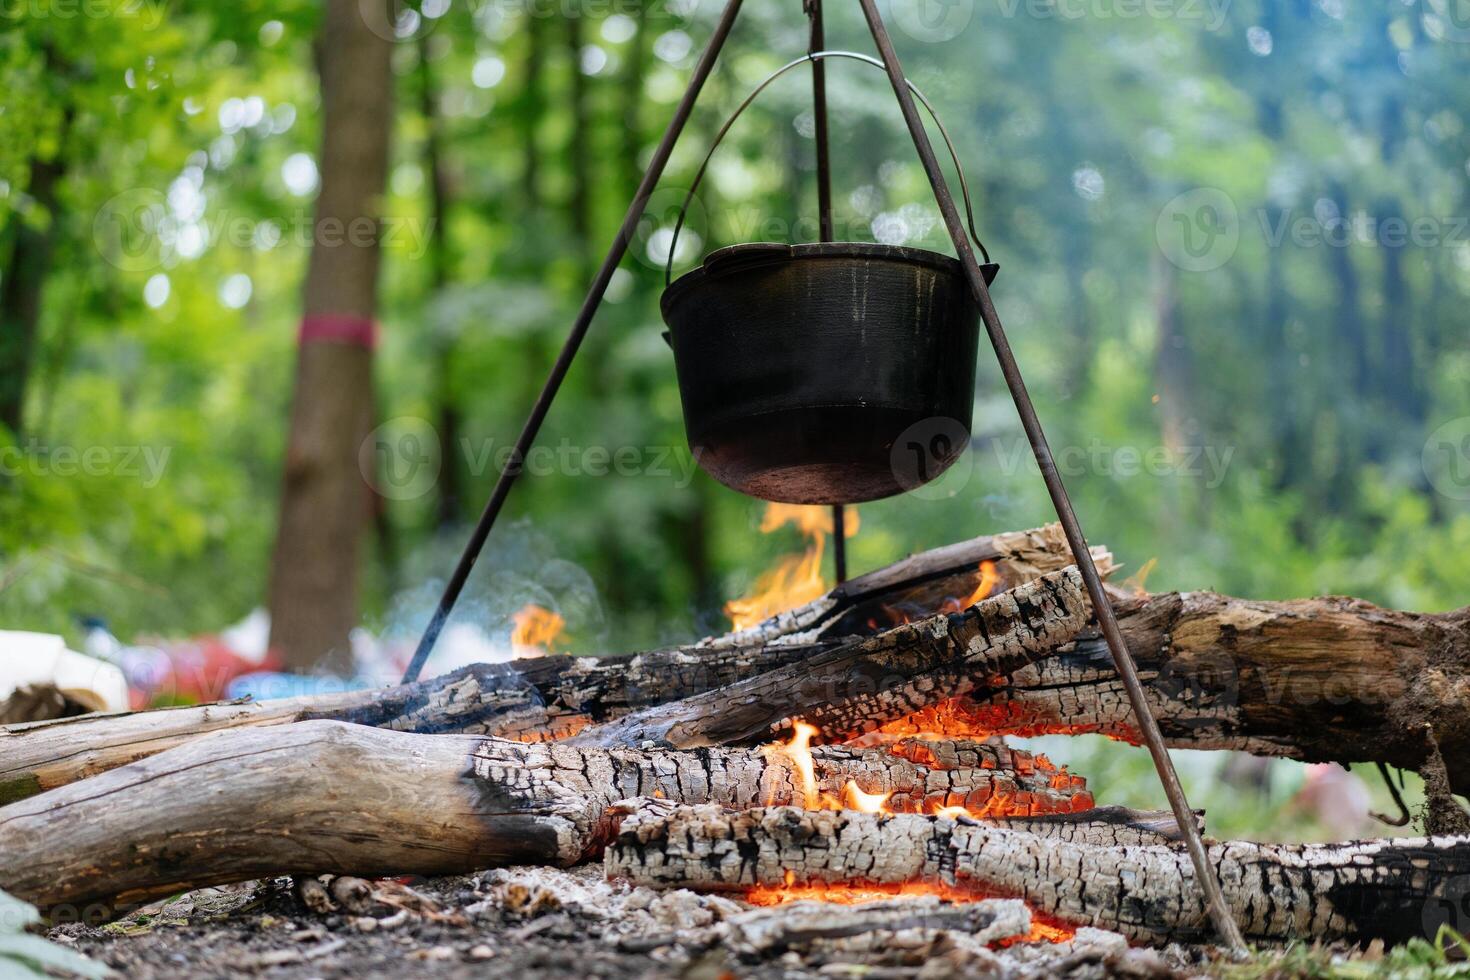 camping utomhus. matlagning kastare hatt hängd på stativ över bål foto